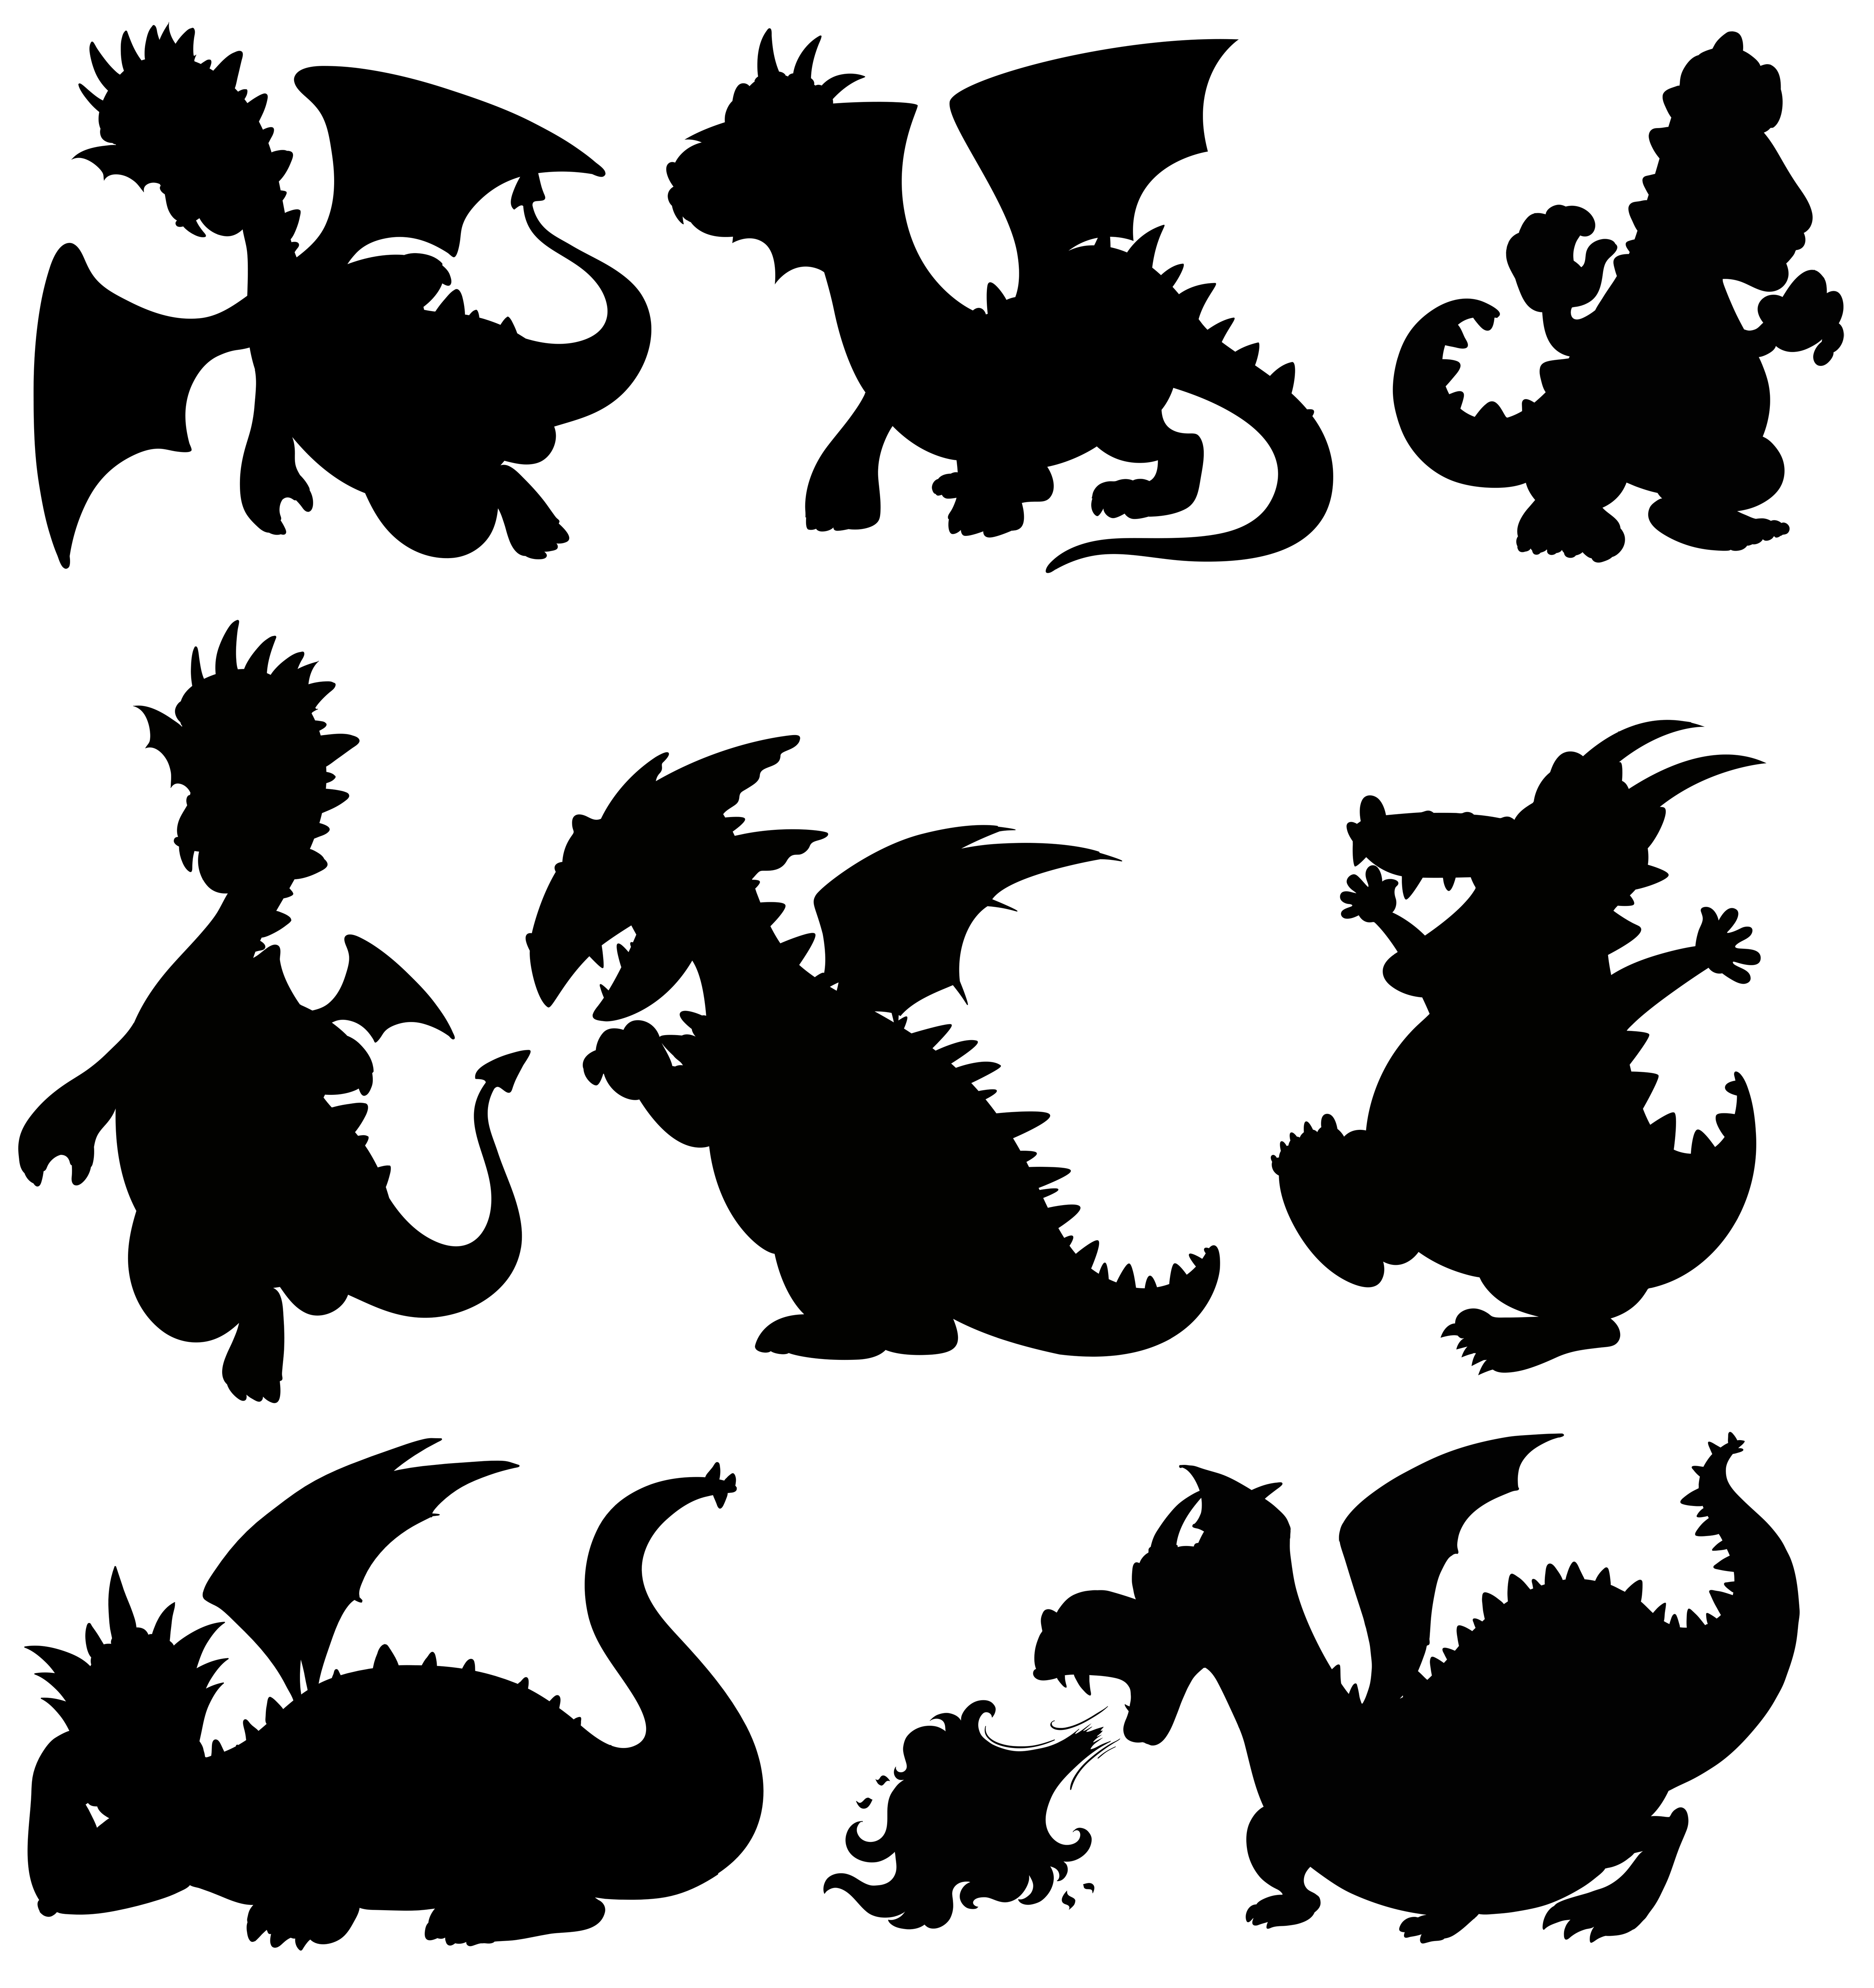 Dragon Silhouette Patterns